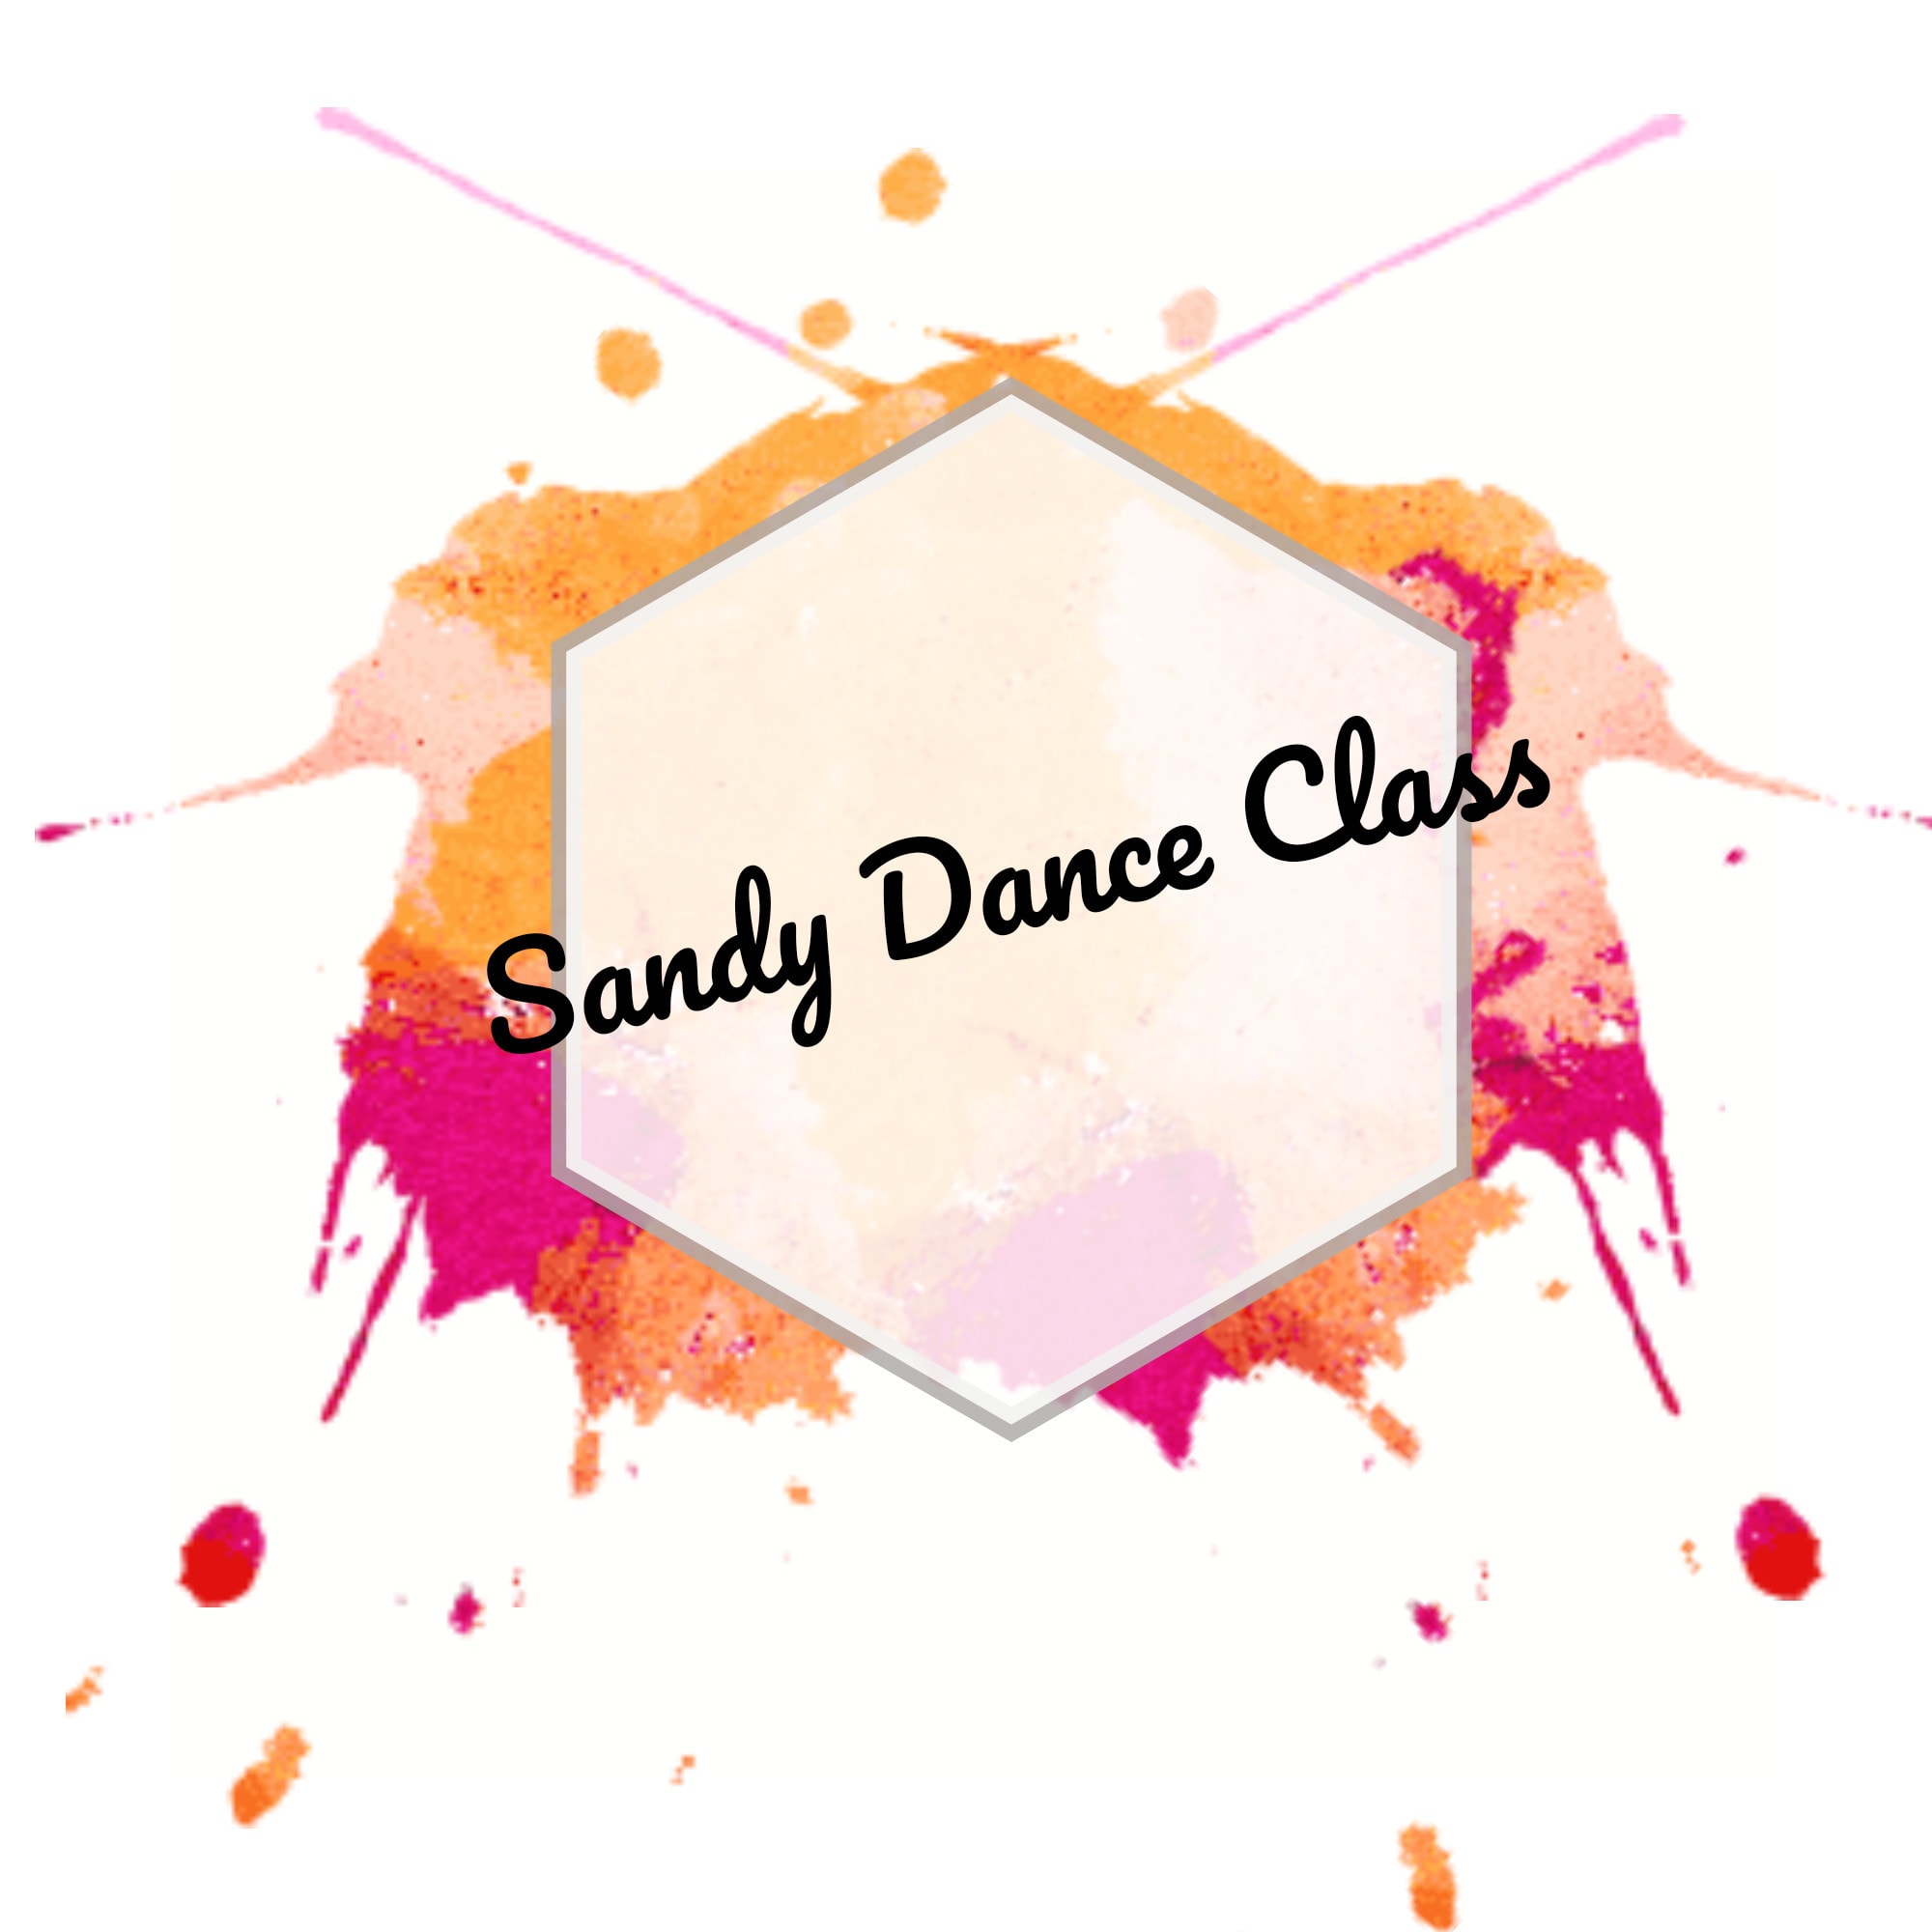 Sandy Dance Class